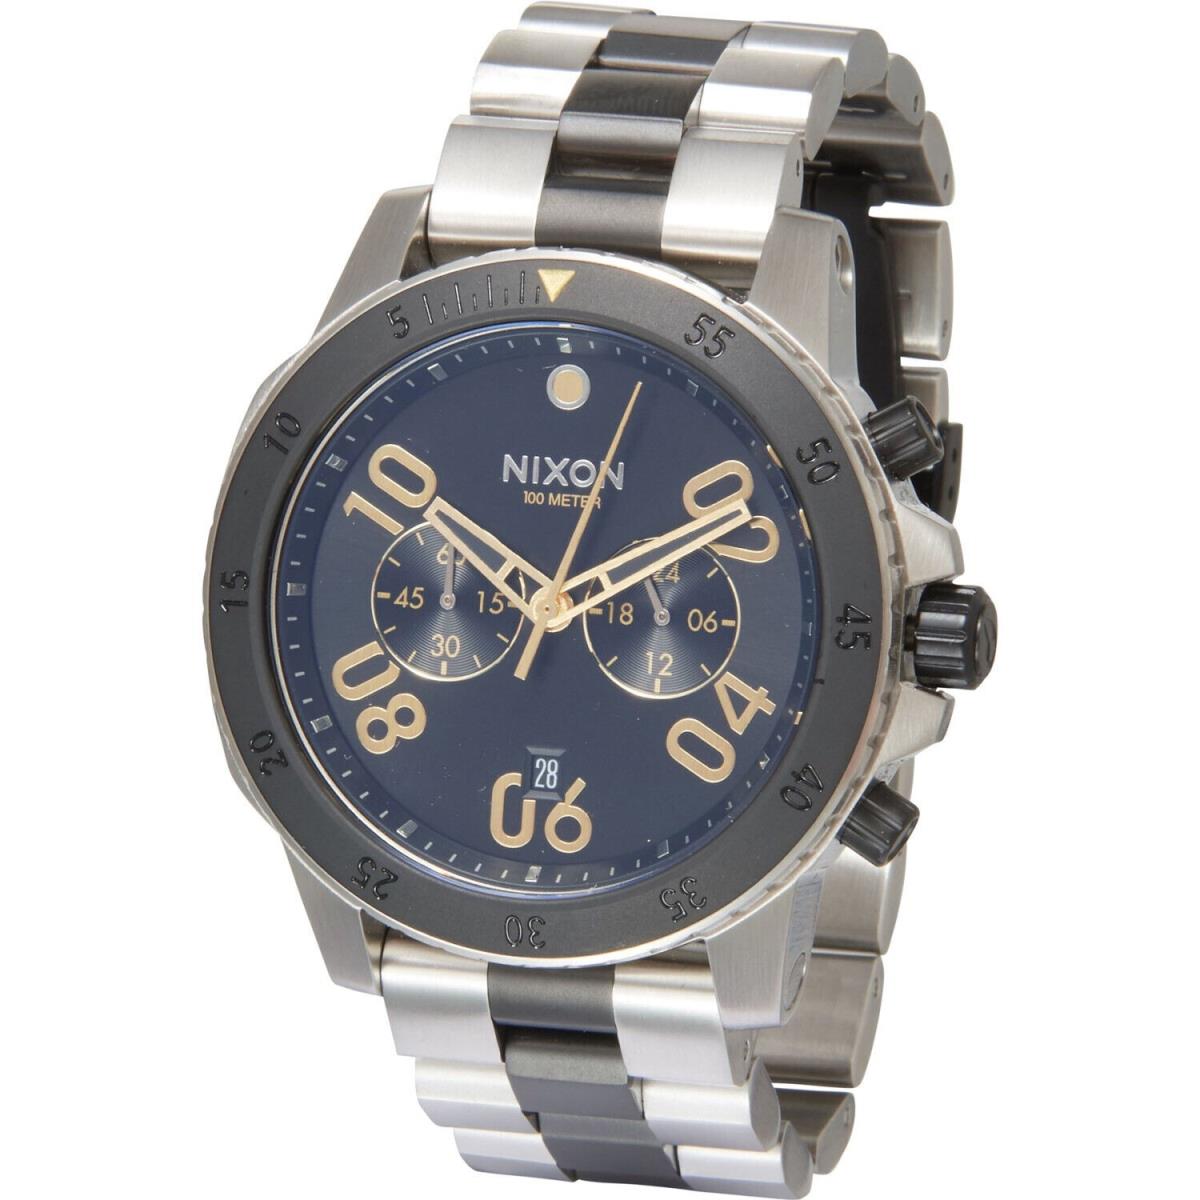 Nixon Ranger Chrono Watch - A549 2194 - Silver/black/gold